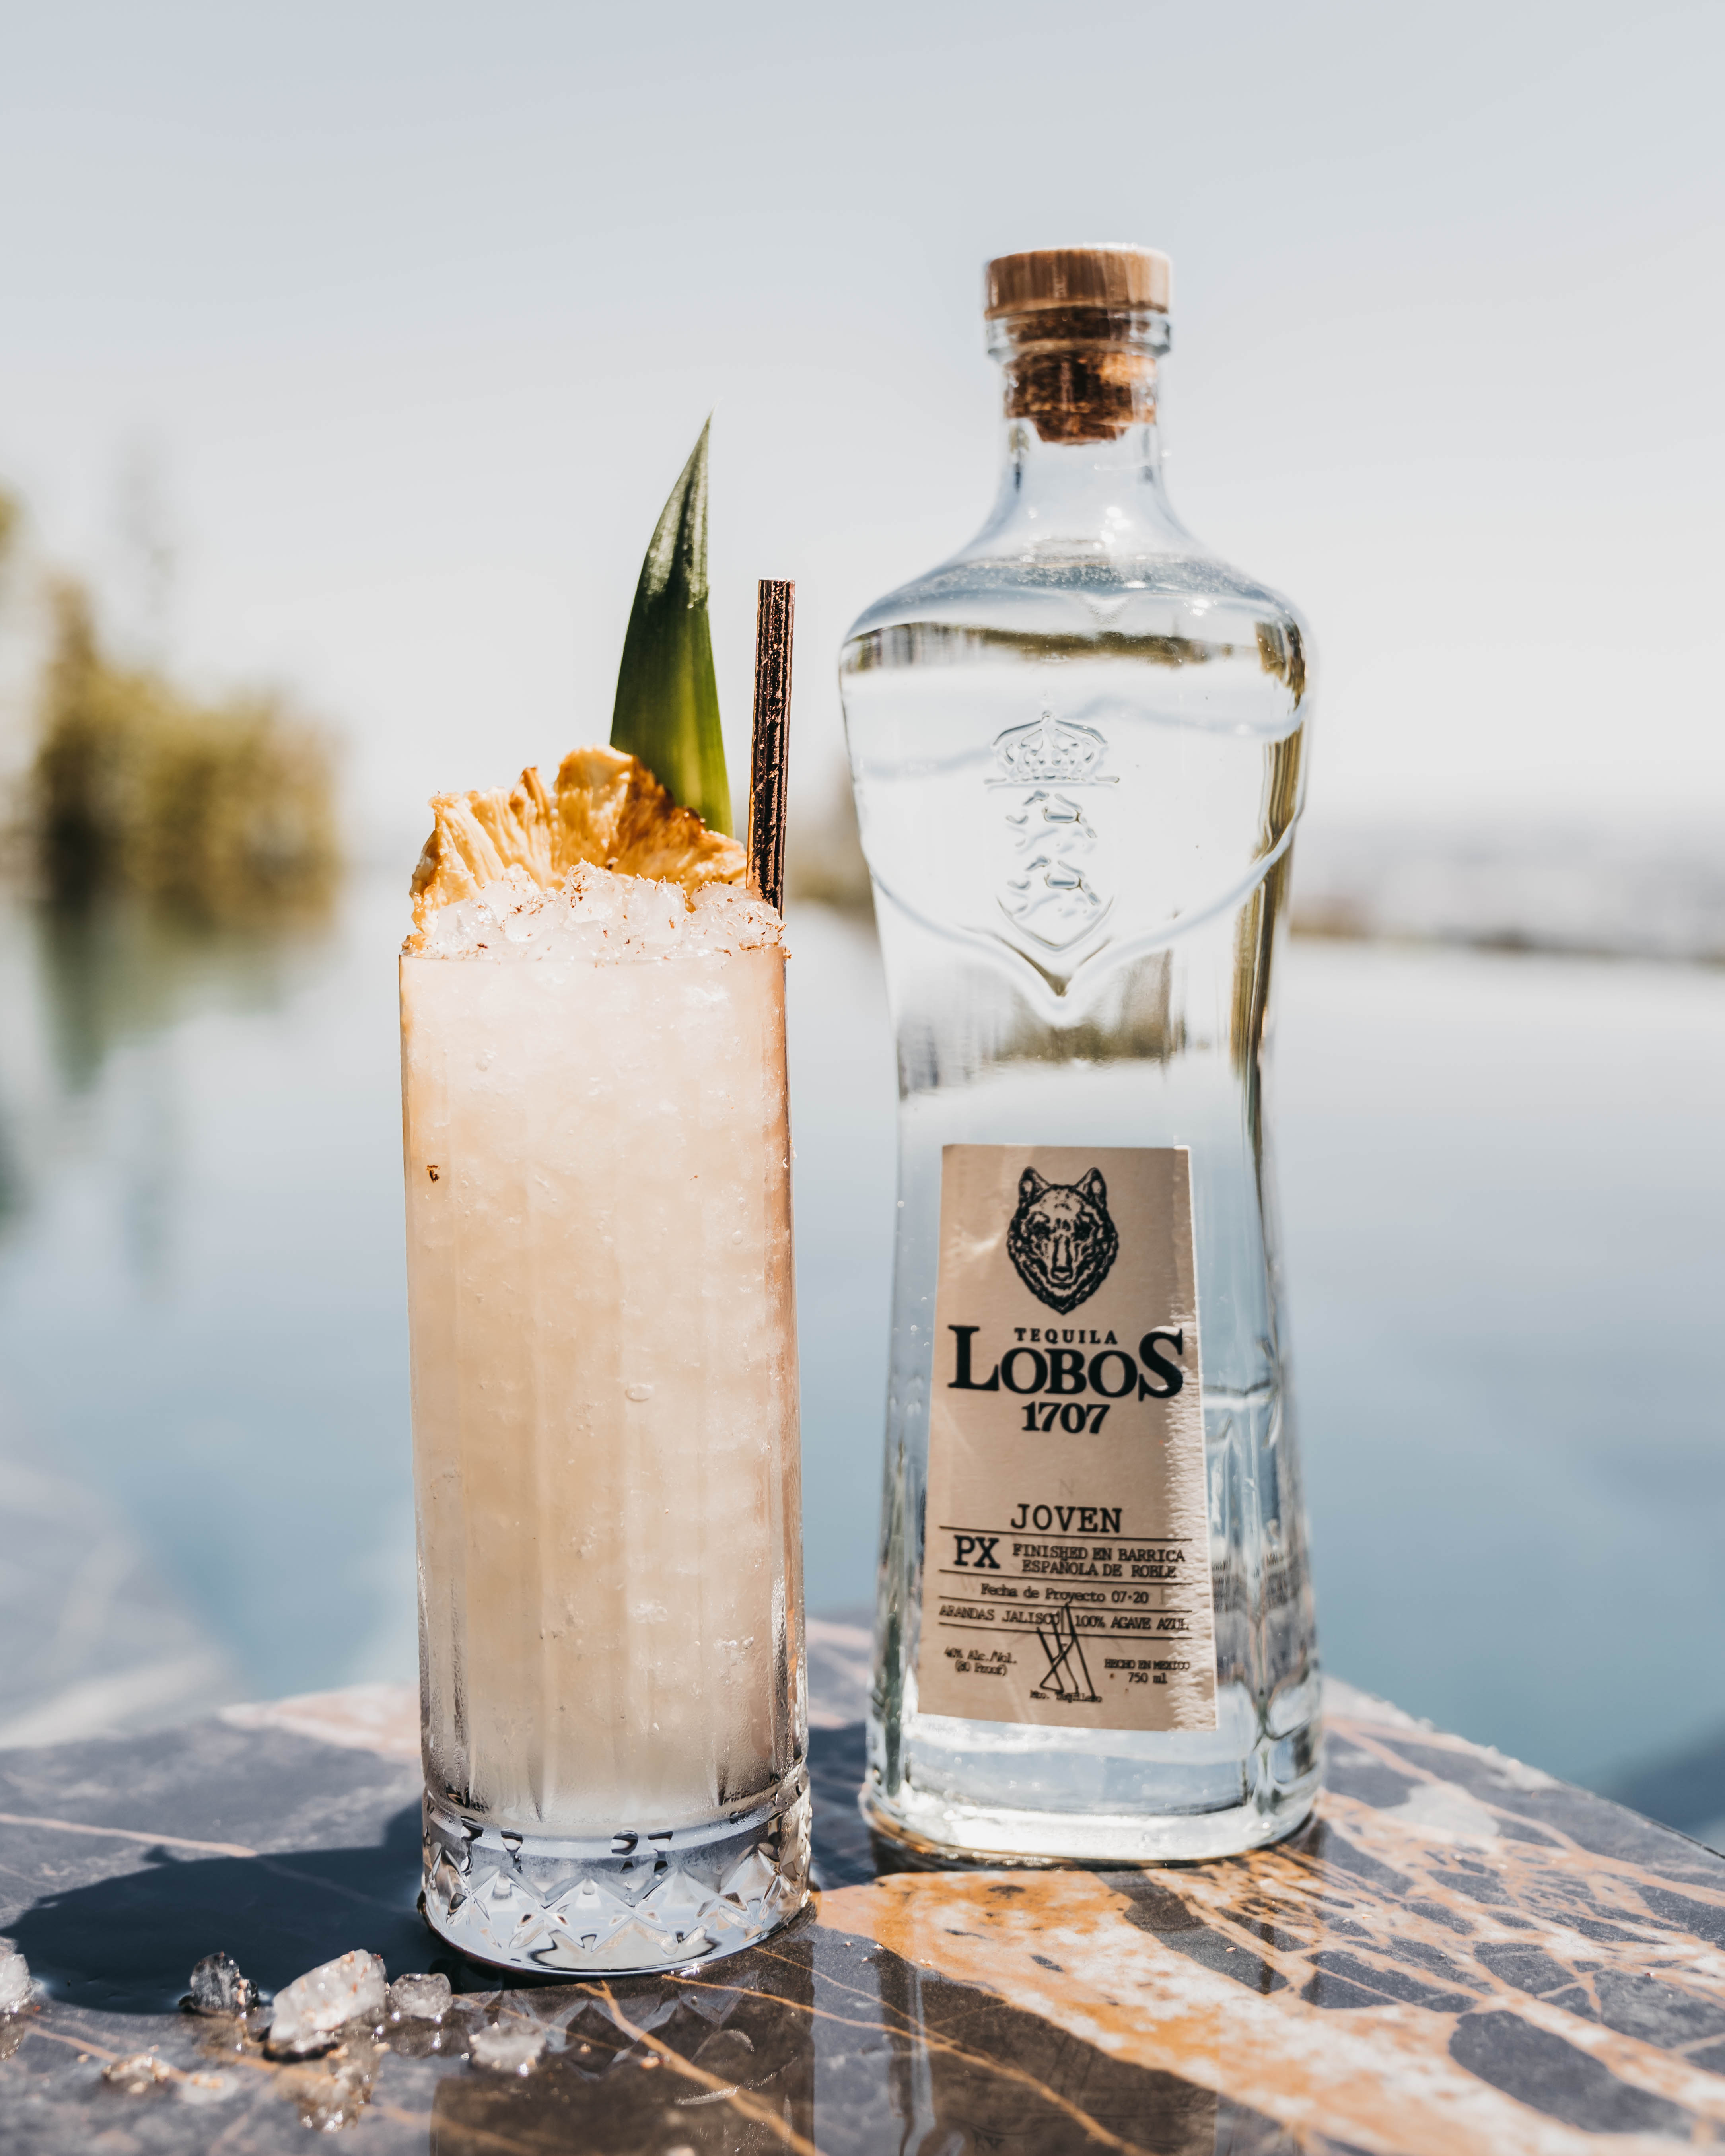 The Lobos 1707 Tequila: “Lobos Colada”